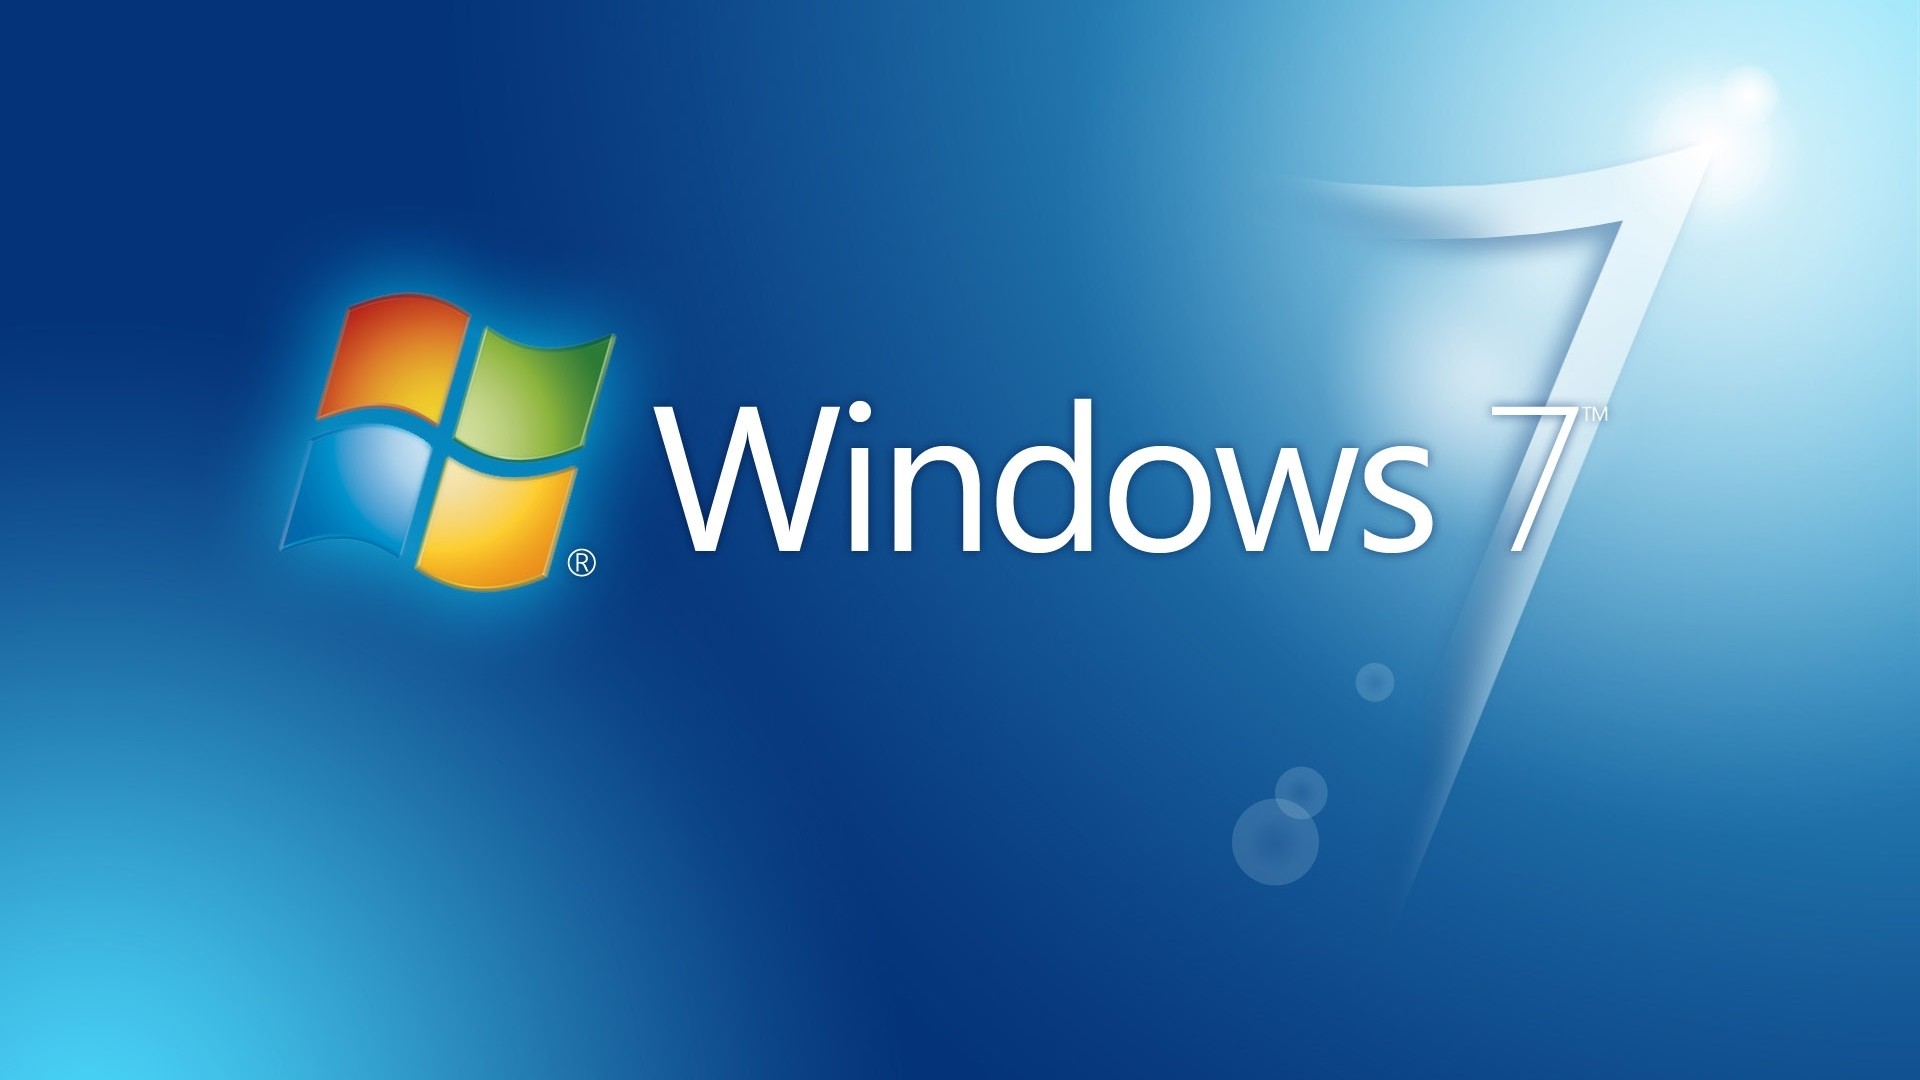 Bạn đang muốn sở hữu một hình nền Windows 7 độ phân giải cao miễn phí để tối ưu hóa trải nghiệm máy tính của mình? Chúng tôi cung cấp các chủ đề hình nền Windows 7 độ phân giải cao miễn phí với chất lượng hình ảnh tuyệt vời để bạn lựa chọn. Hãy thăm trang web của chúng tôi để tìm kiếm hình nền Windows 7 đẹp trọn vẹn nhất.